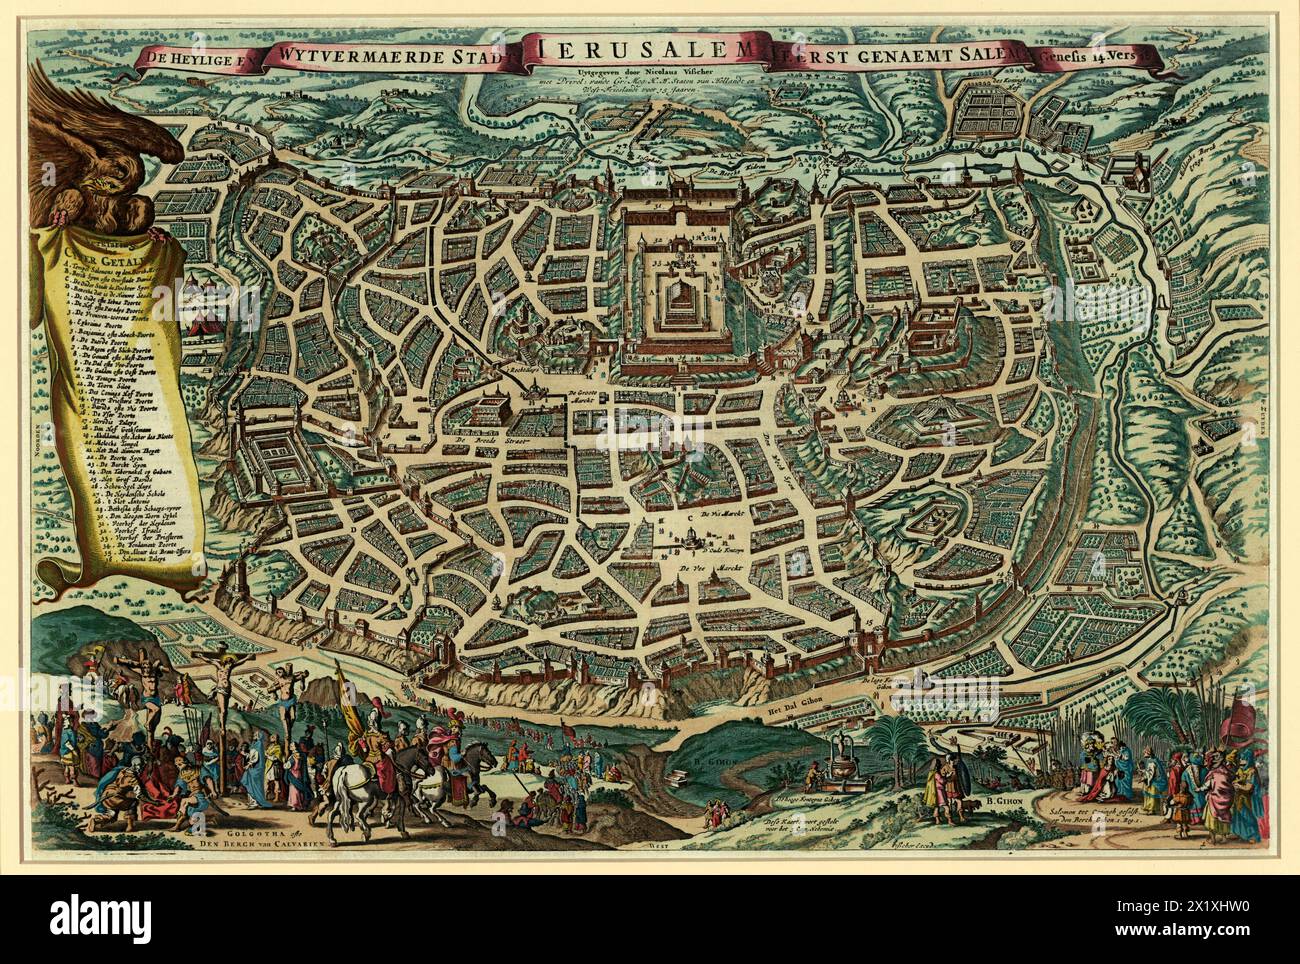 Die heilige und erweiterte Stadt Jerusalem, zuerst bekannt als Salem von Visscher, Claes Jansz im Jahr 1756 Nachdruck ( ursprünglich 1643 ) Stockfoto